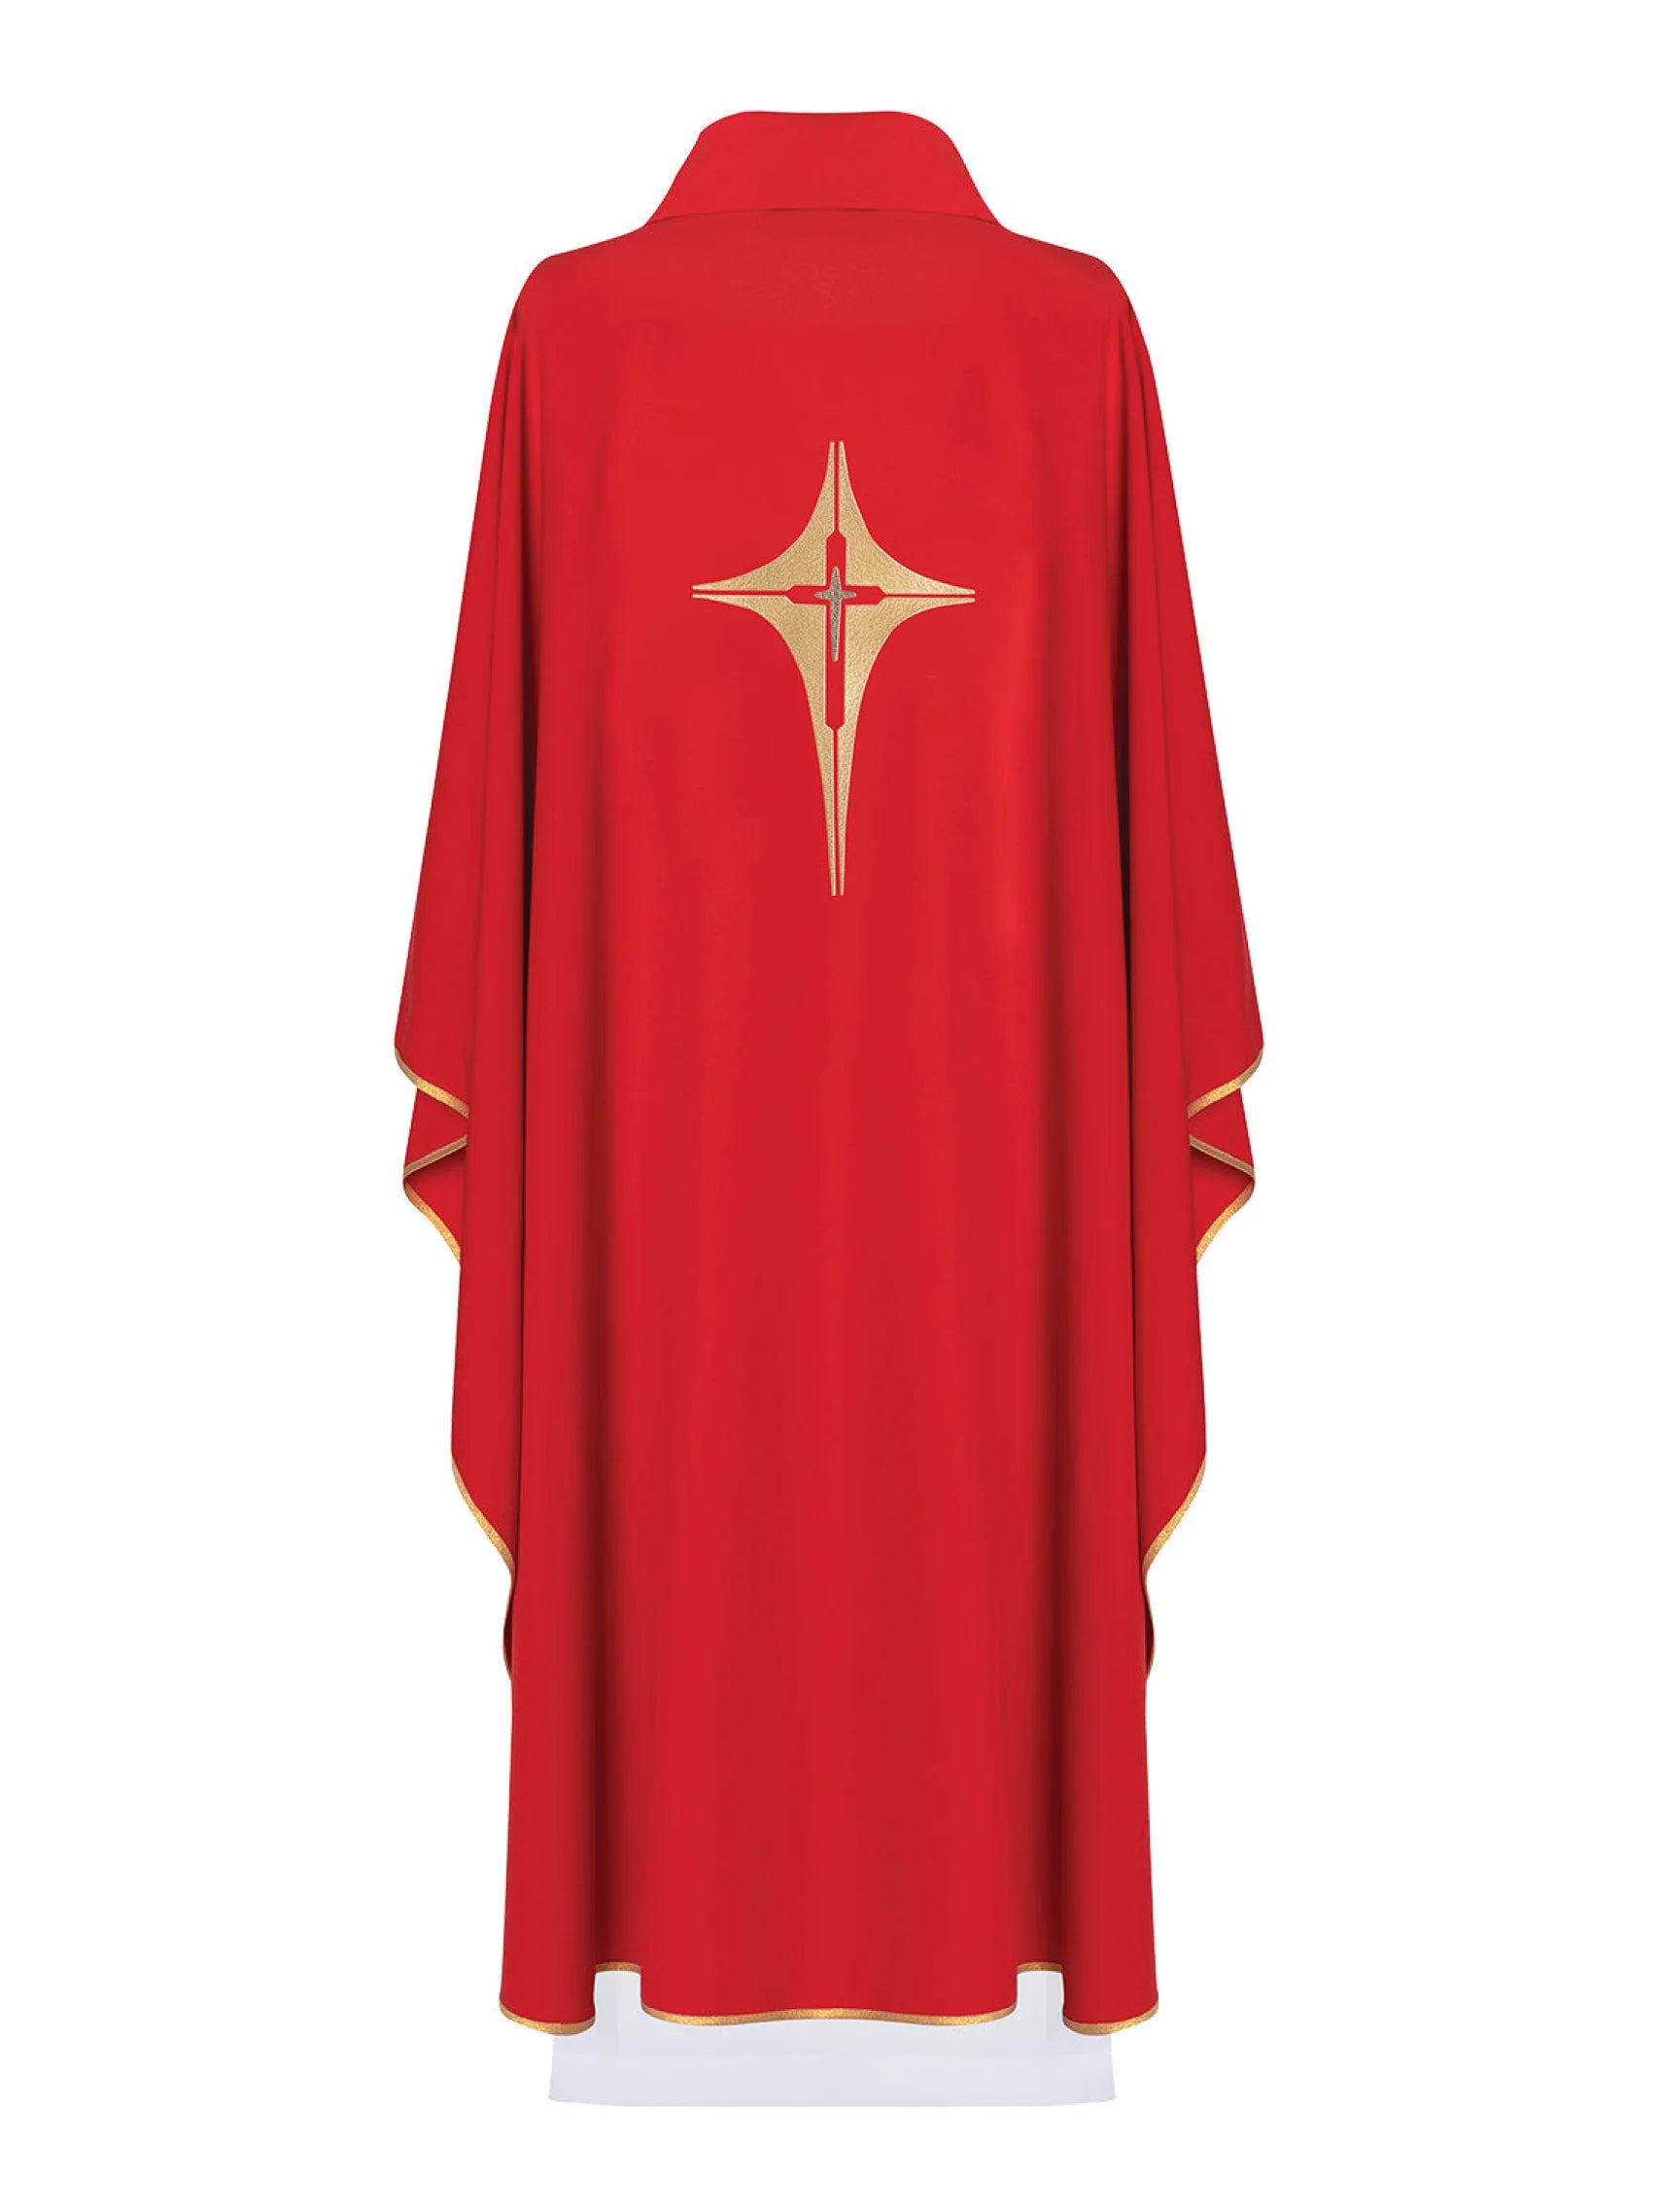 Ornat haftowany z symbolem krzyża KOR/002 Czerwony - ORNATY.PL